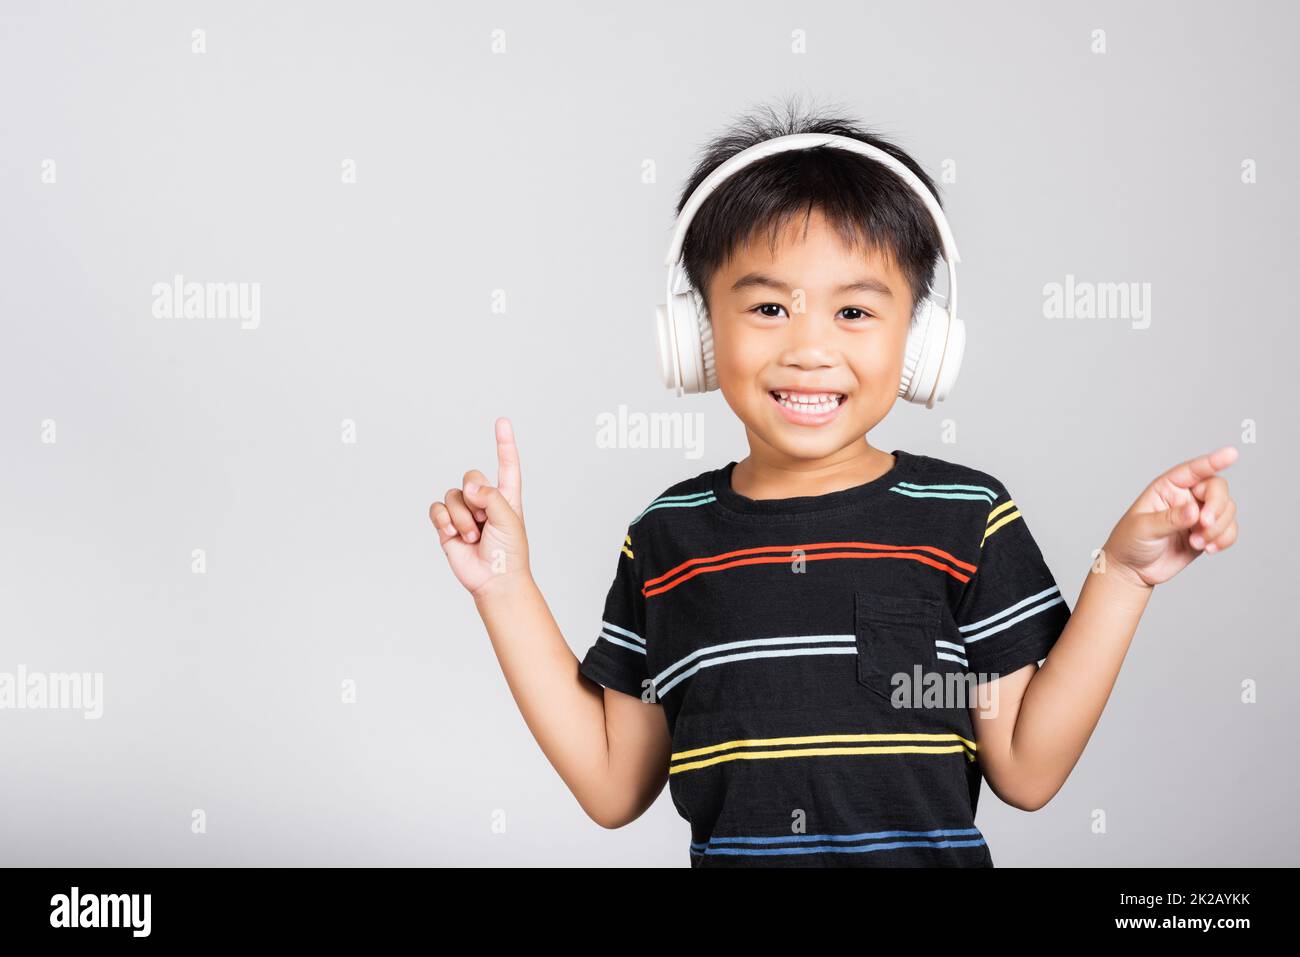 Kleiner süßer Junge 5-6 Jahre Hören Sie Musik in kabellosen Kopfhörern im Studio isoliert. Kleiner süßer Junge 5-6 Jahre Hören Sie Musik in kabellosen Kopfhörern im Studio isoliert auf weißem Hintergrund, glückliche asiatische Kinder lächeln und hören Audio A Stockfoto